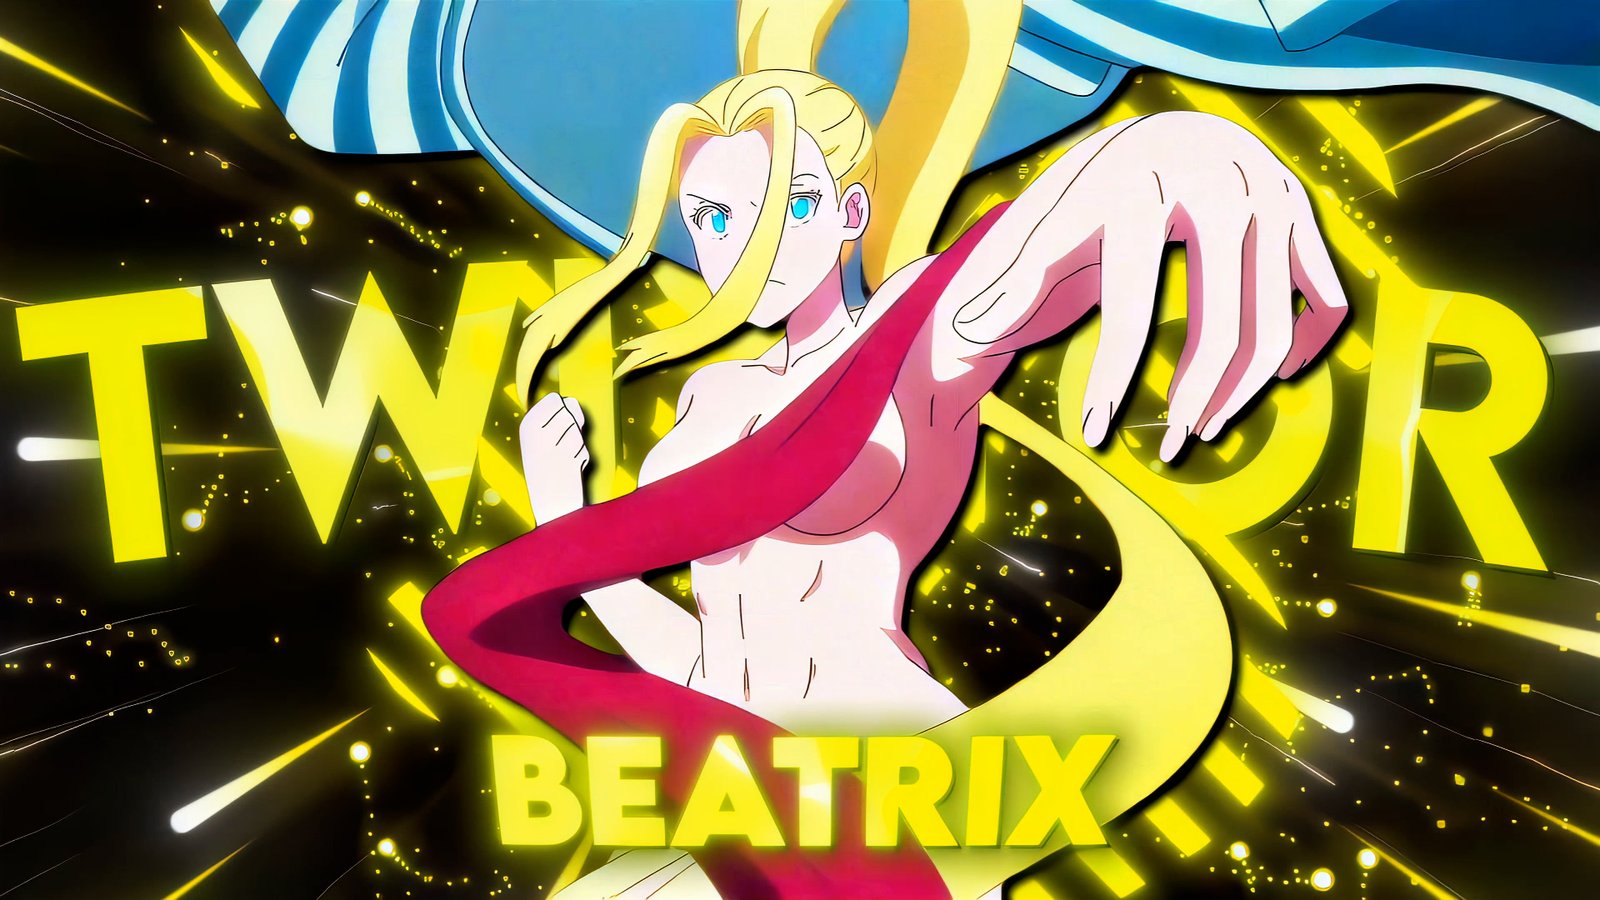 Beatrix EP8 Twixtor